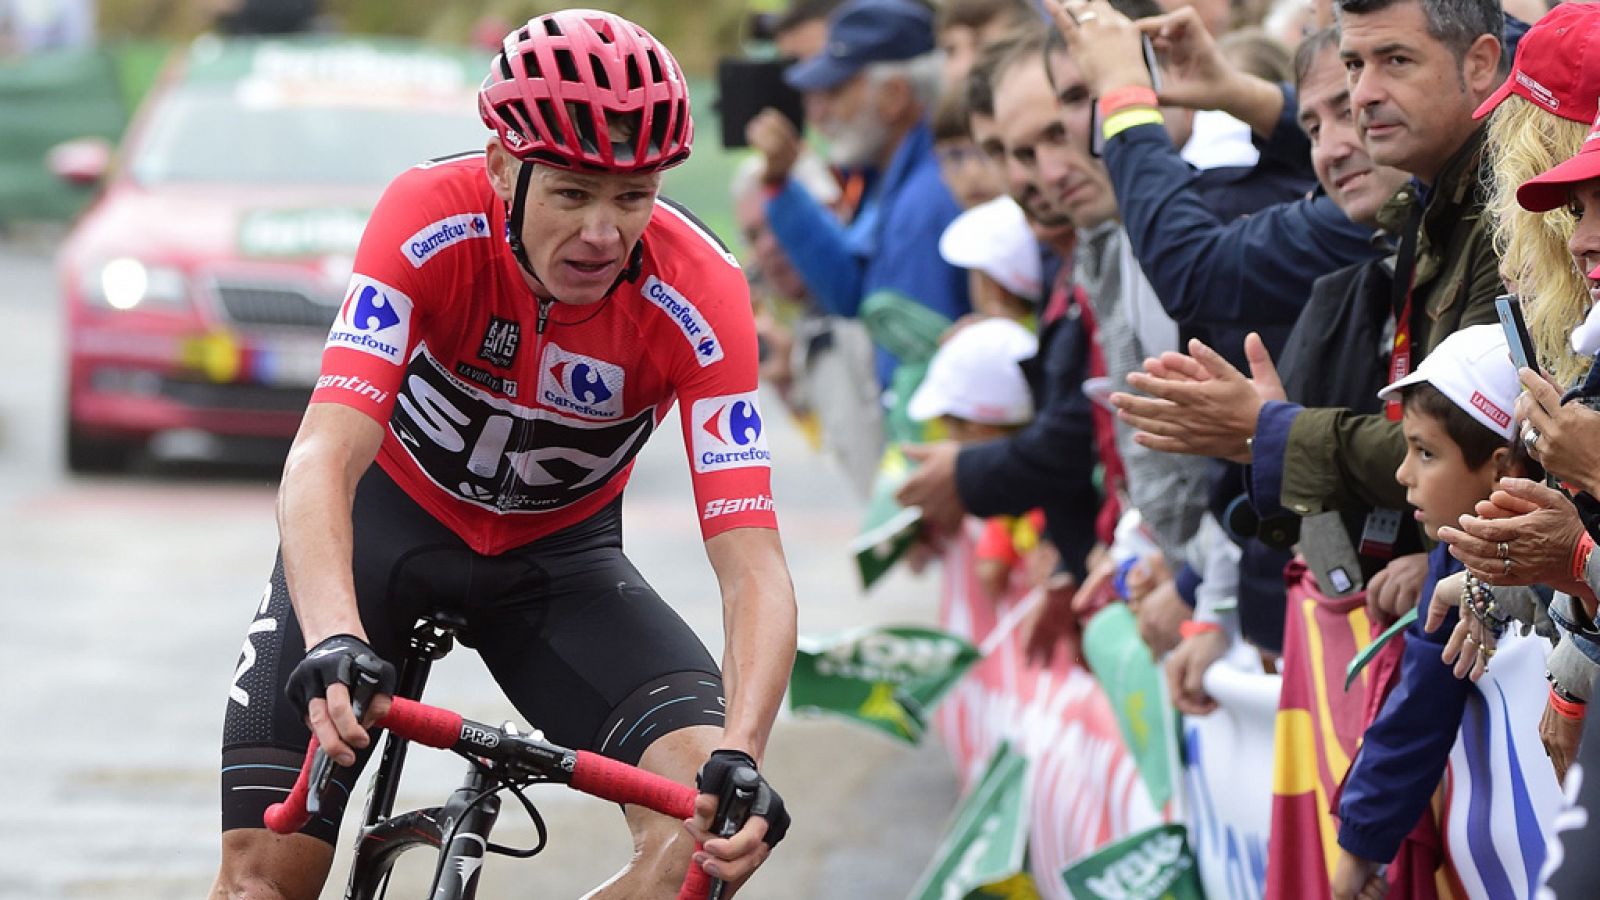 El líder de la Vuelta, Chris Froome, ha asegurado en la meta de Los Machucos que se siente "bien" y confiado en mantener el liderato "los tres días que quedan" de la ronda española.